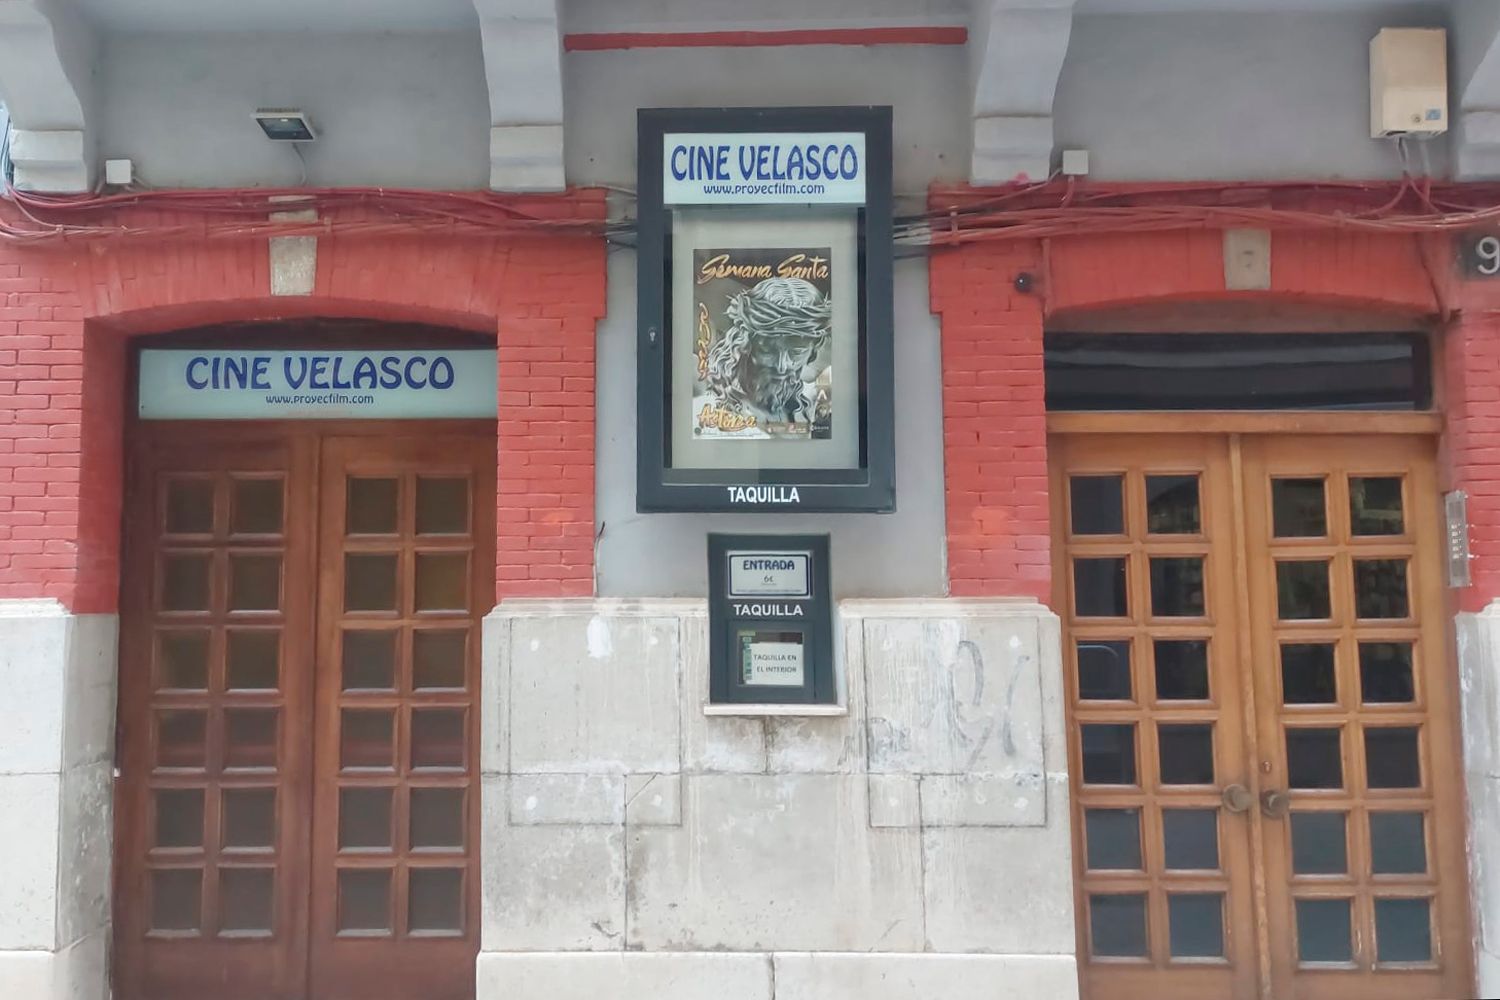 El séptimo arte volverá al Cine Velasco de Astorga tras dos años sin actividad